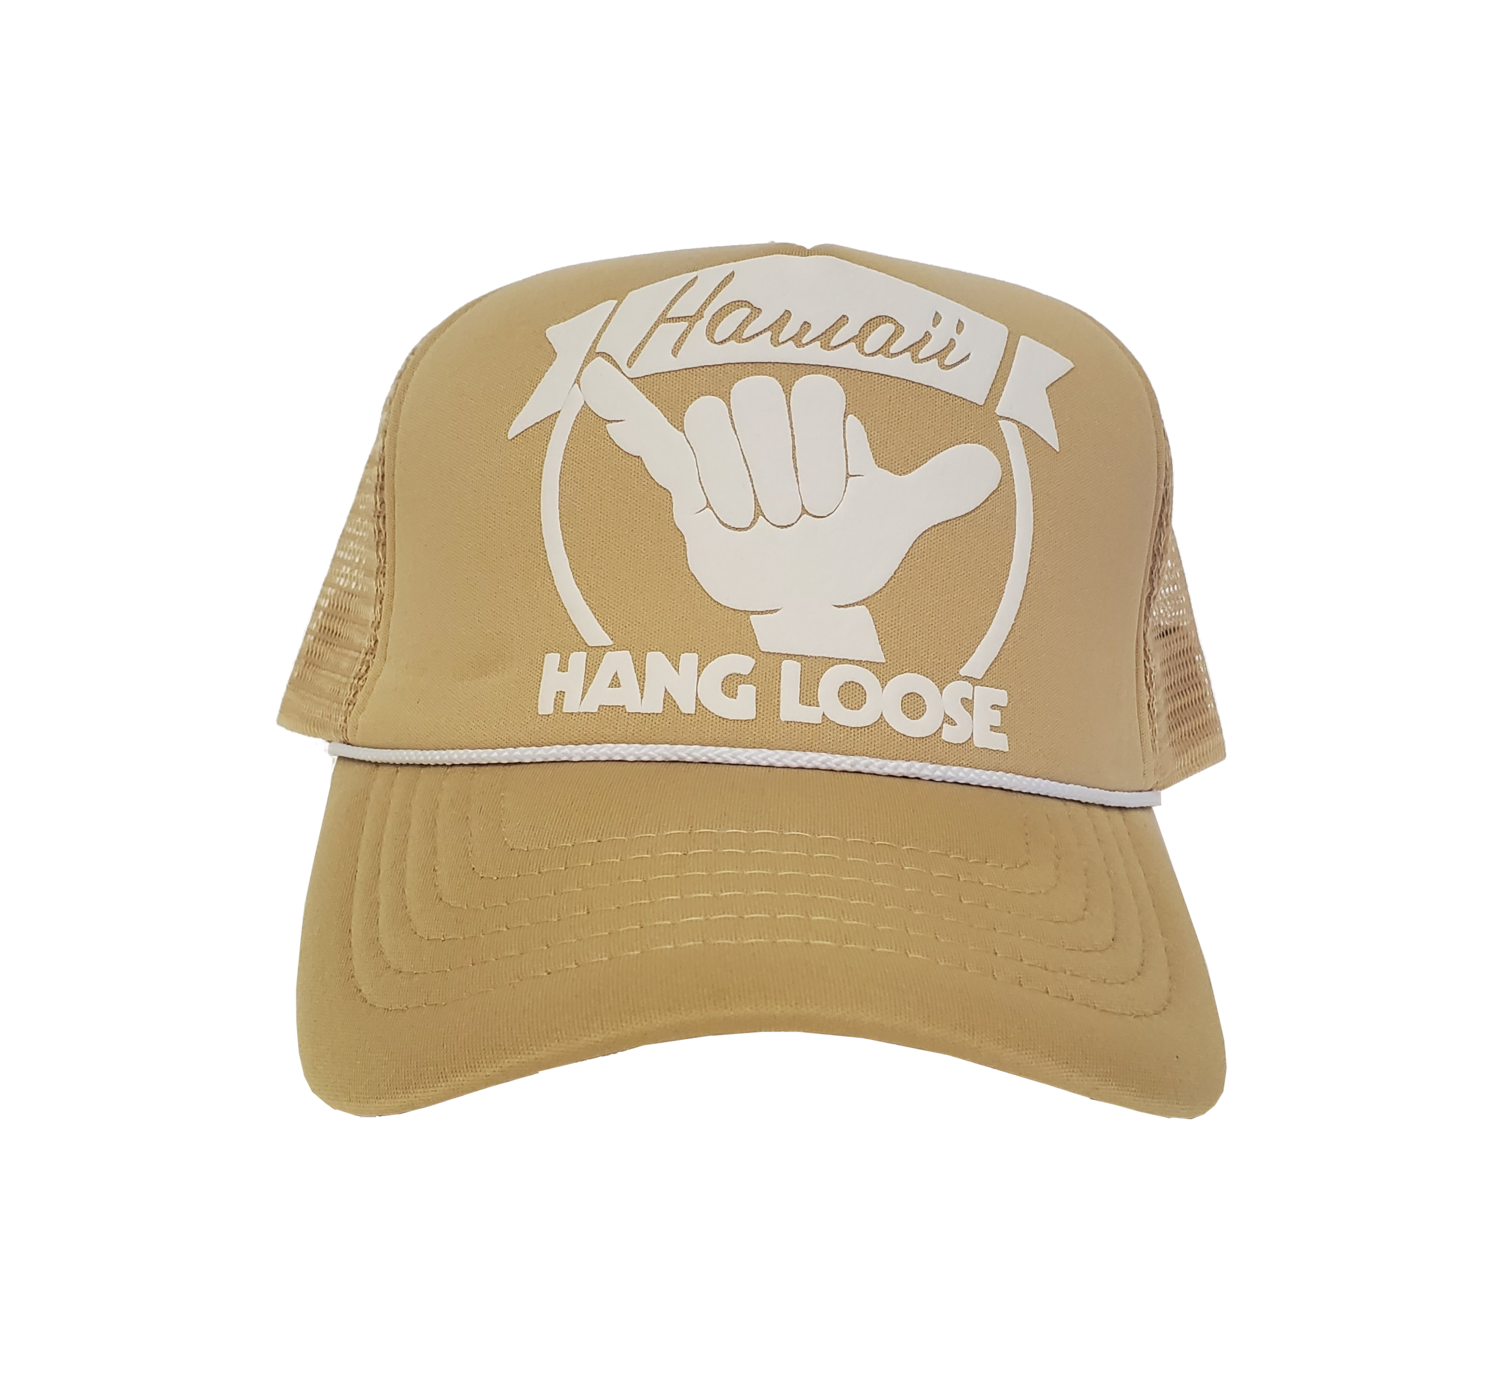 Hawaiian Headwear Hang Loose Hawaii Foam Trucker Hat - Tan